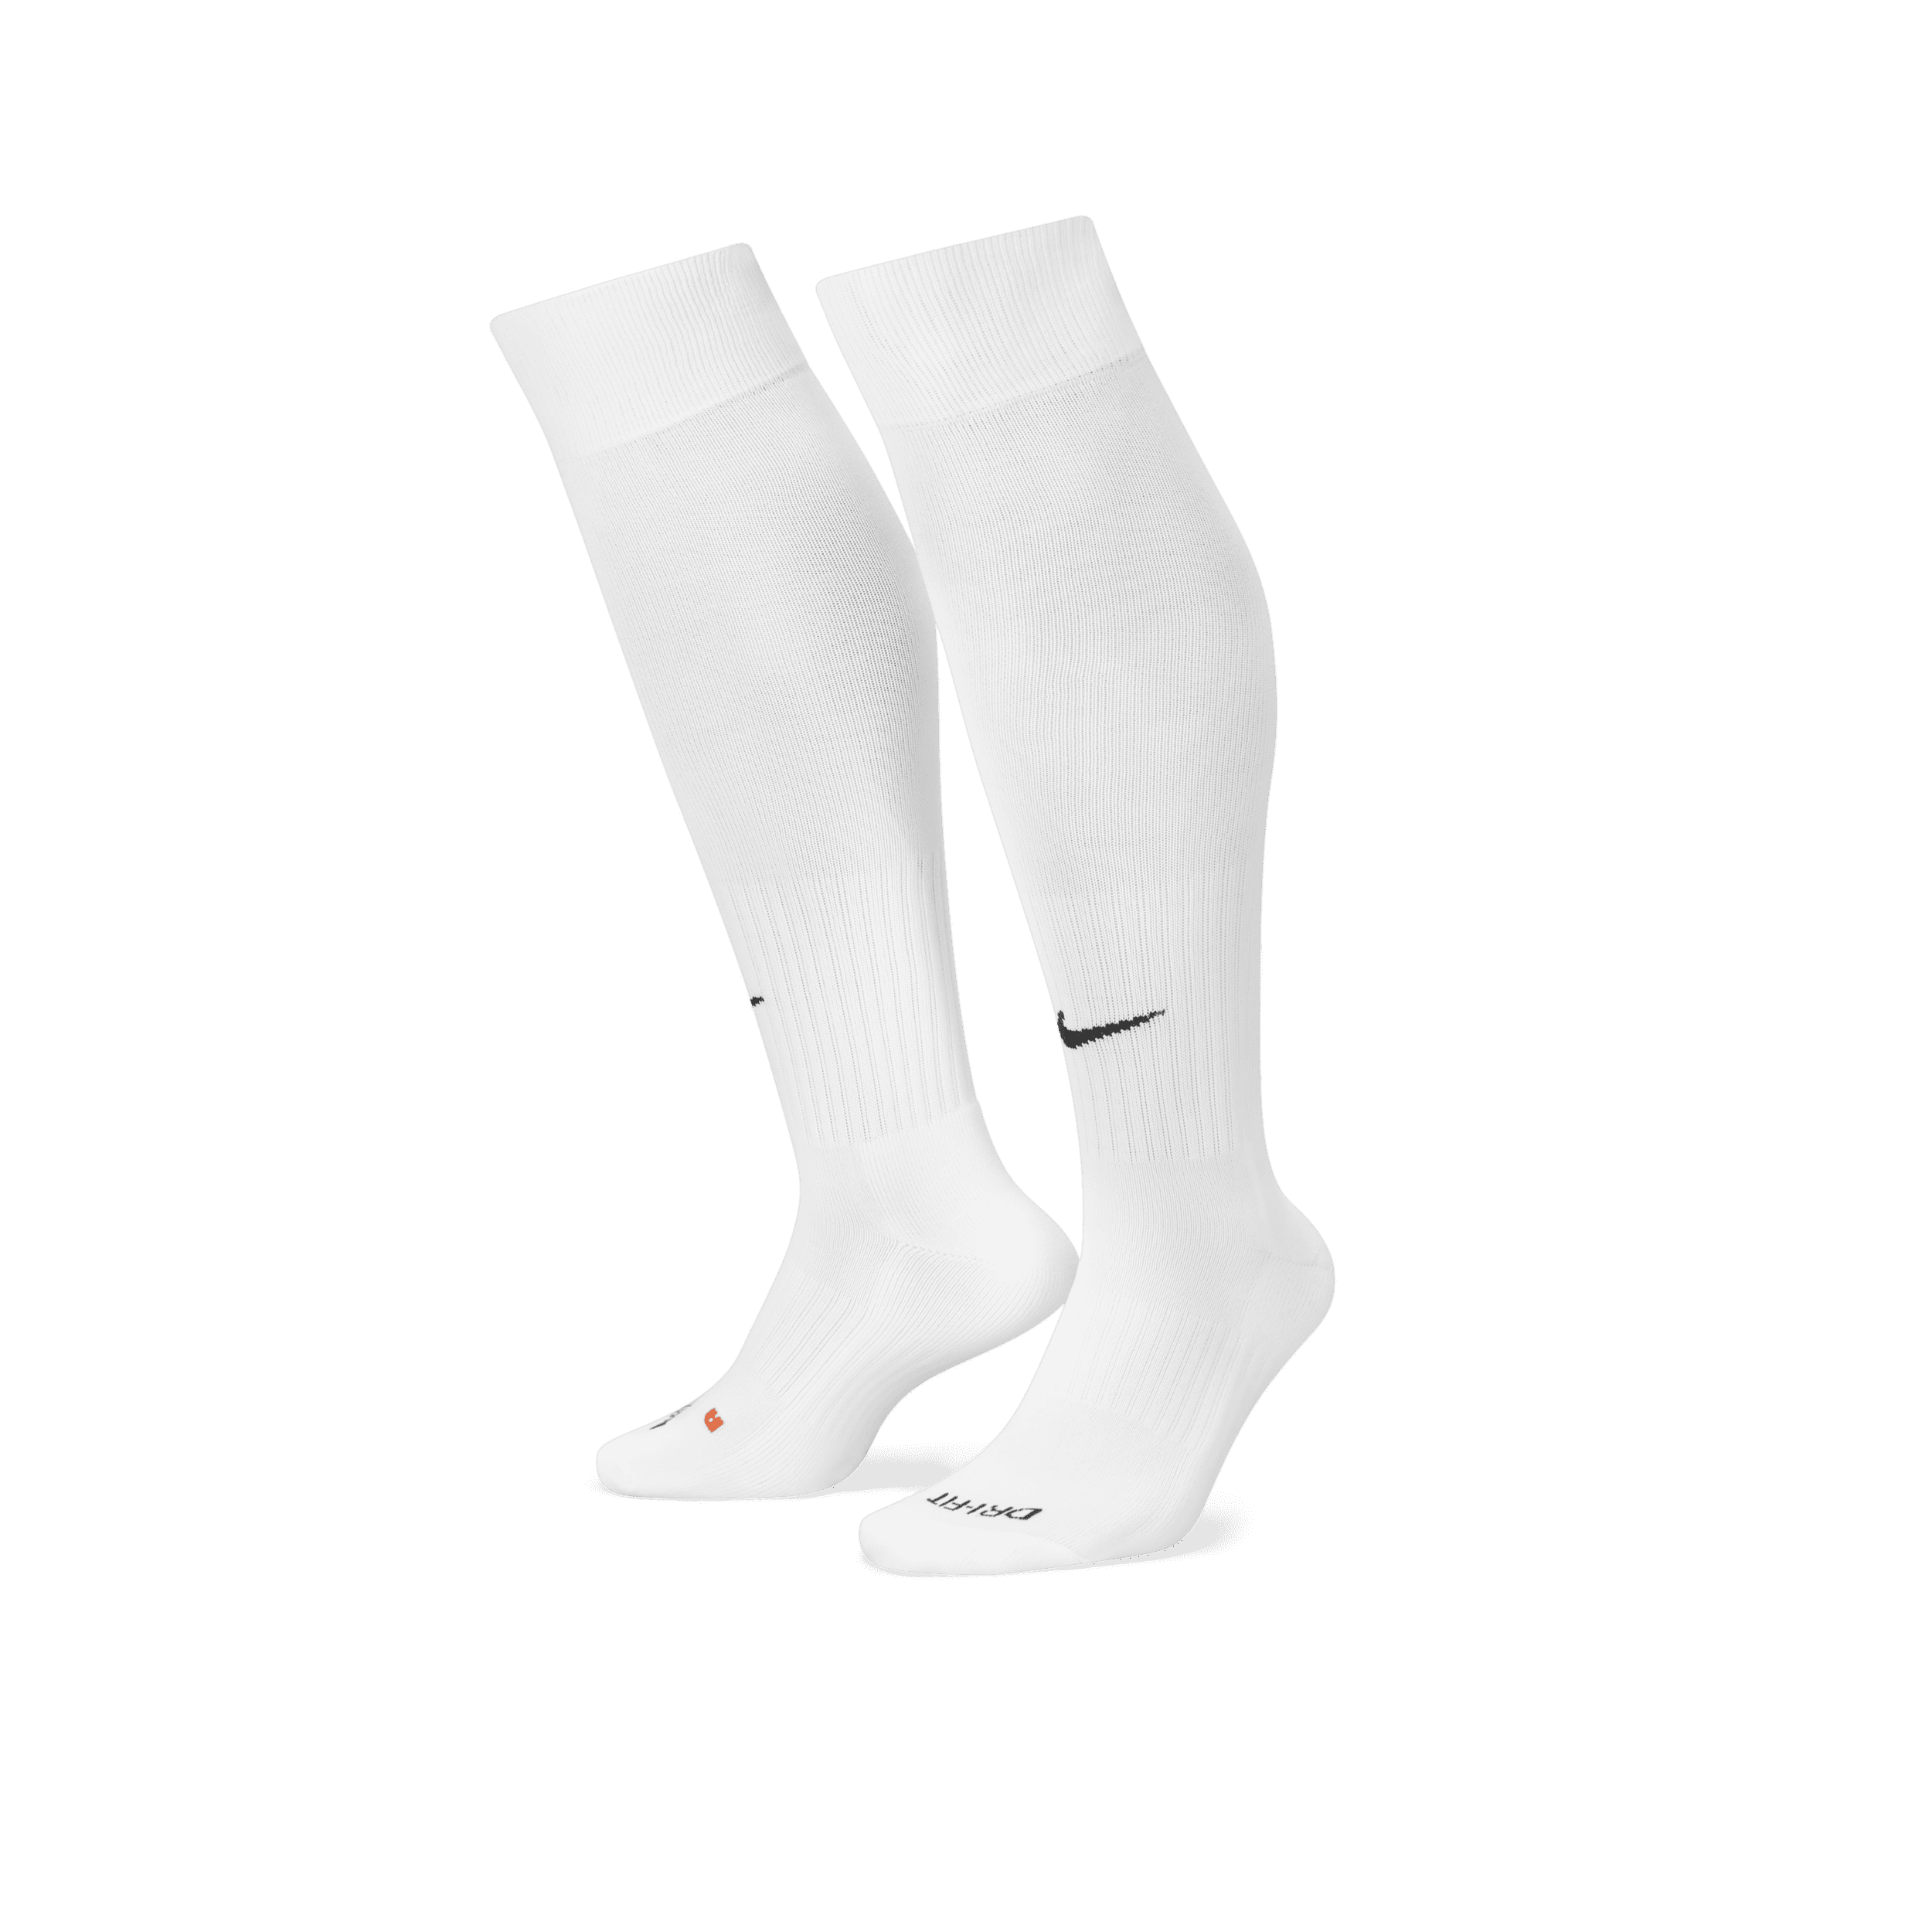 Nike Classic 2 Calcetines largos con amortiguación - Blanco